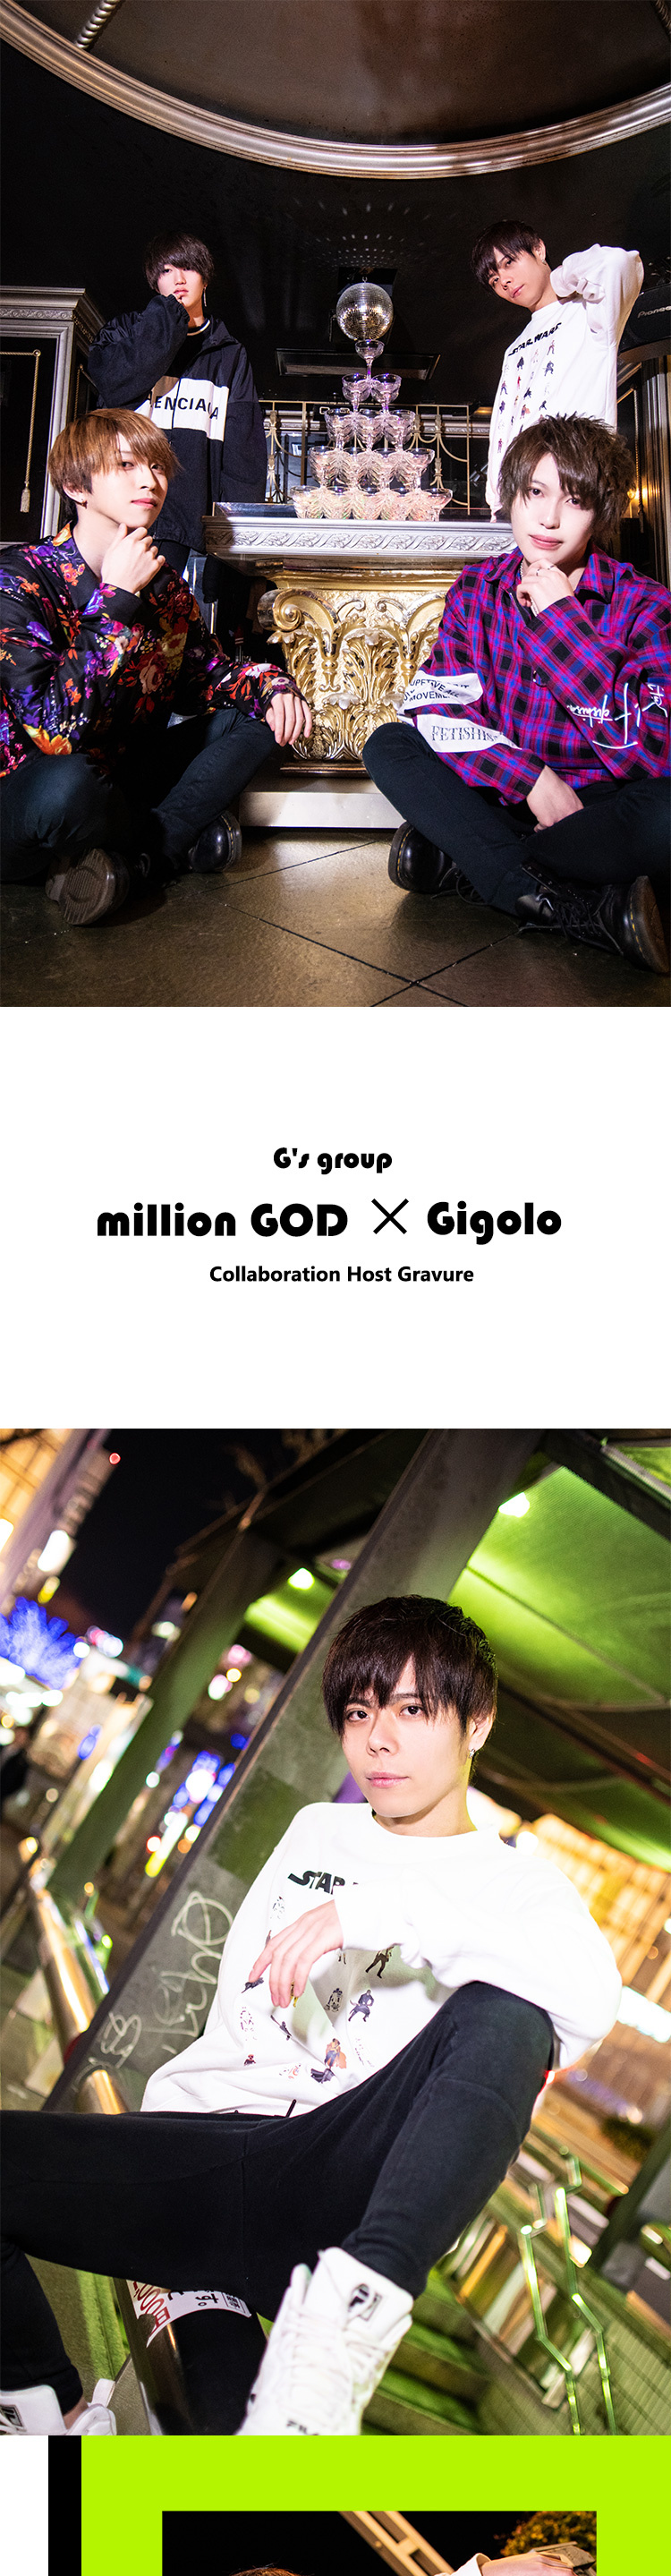 「G's group」の「million GOD」と「Gigolo」がコラボ!!